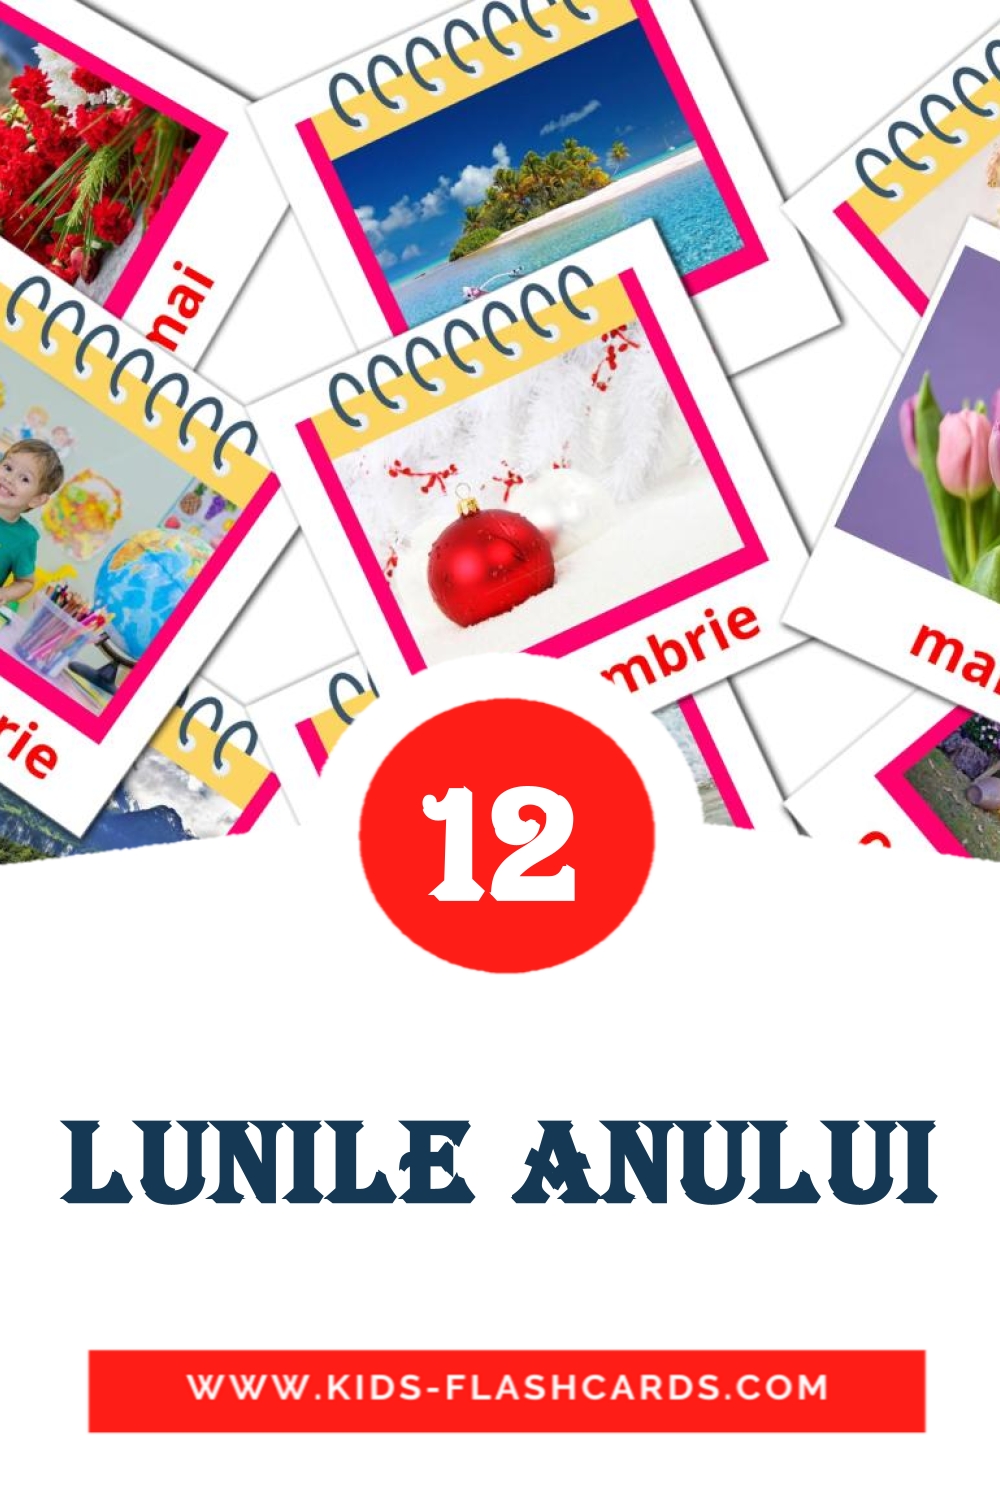 Lunile anului на румынском для Детского Сада (12 карточек)